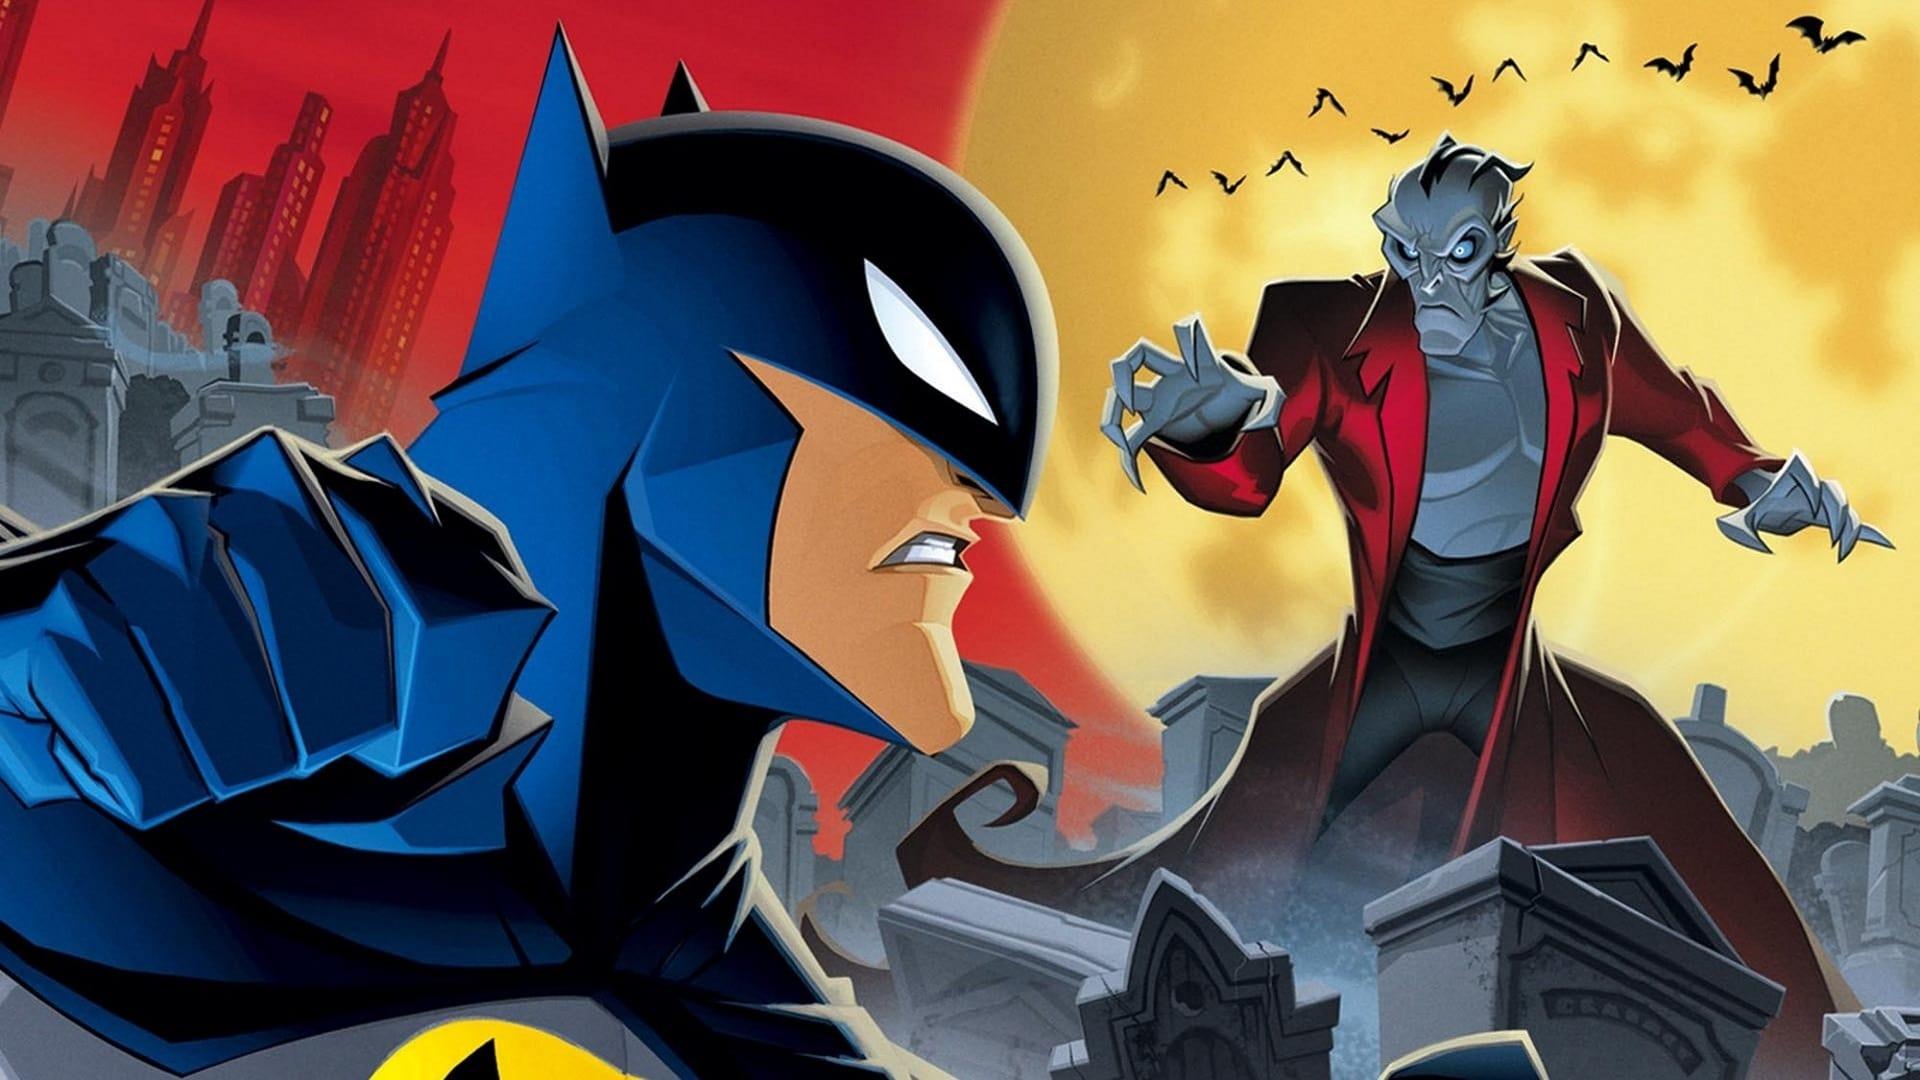 The Batman vs. Dracula backdrop